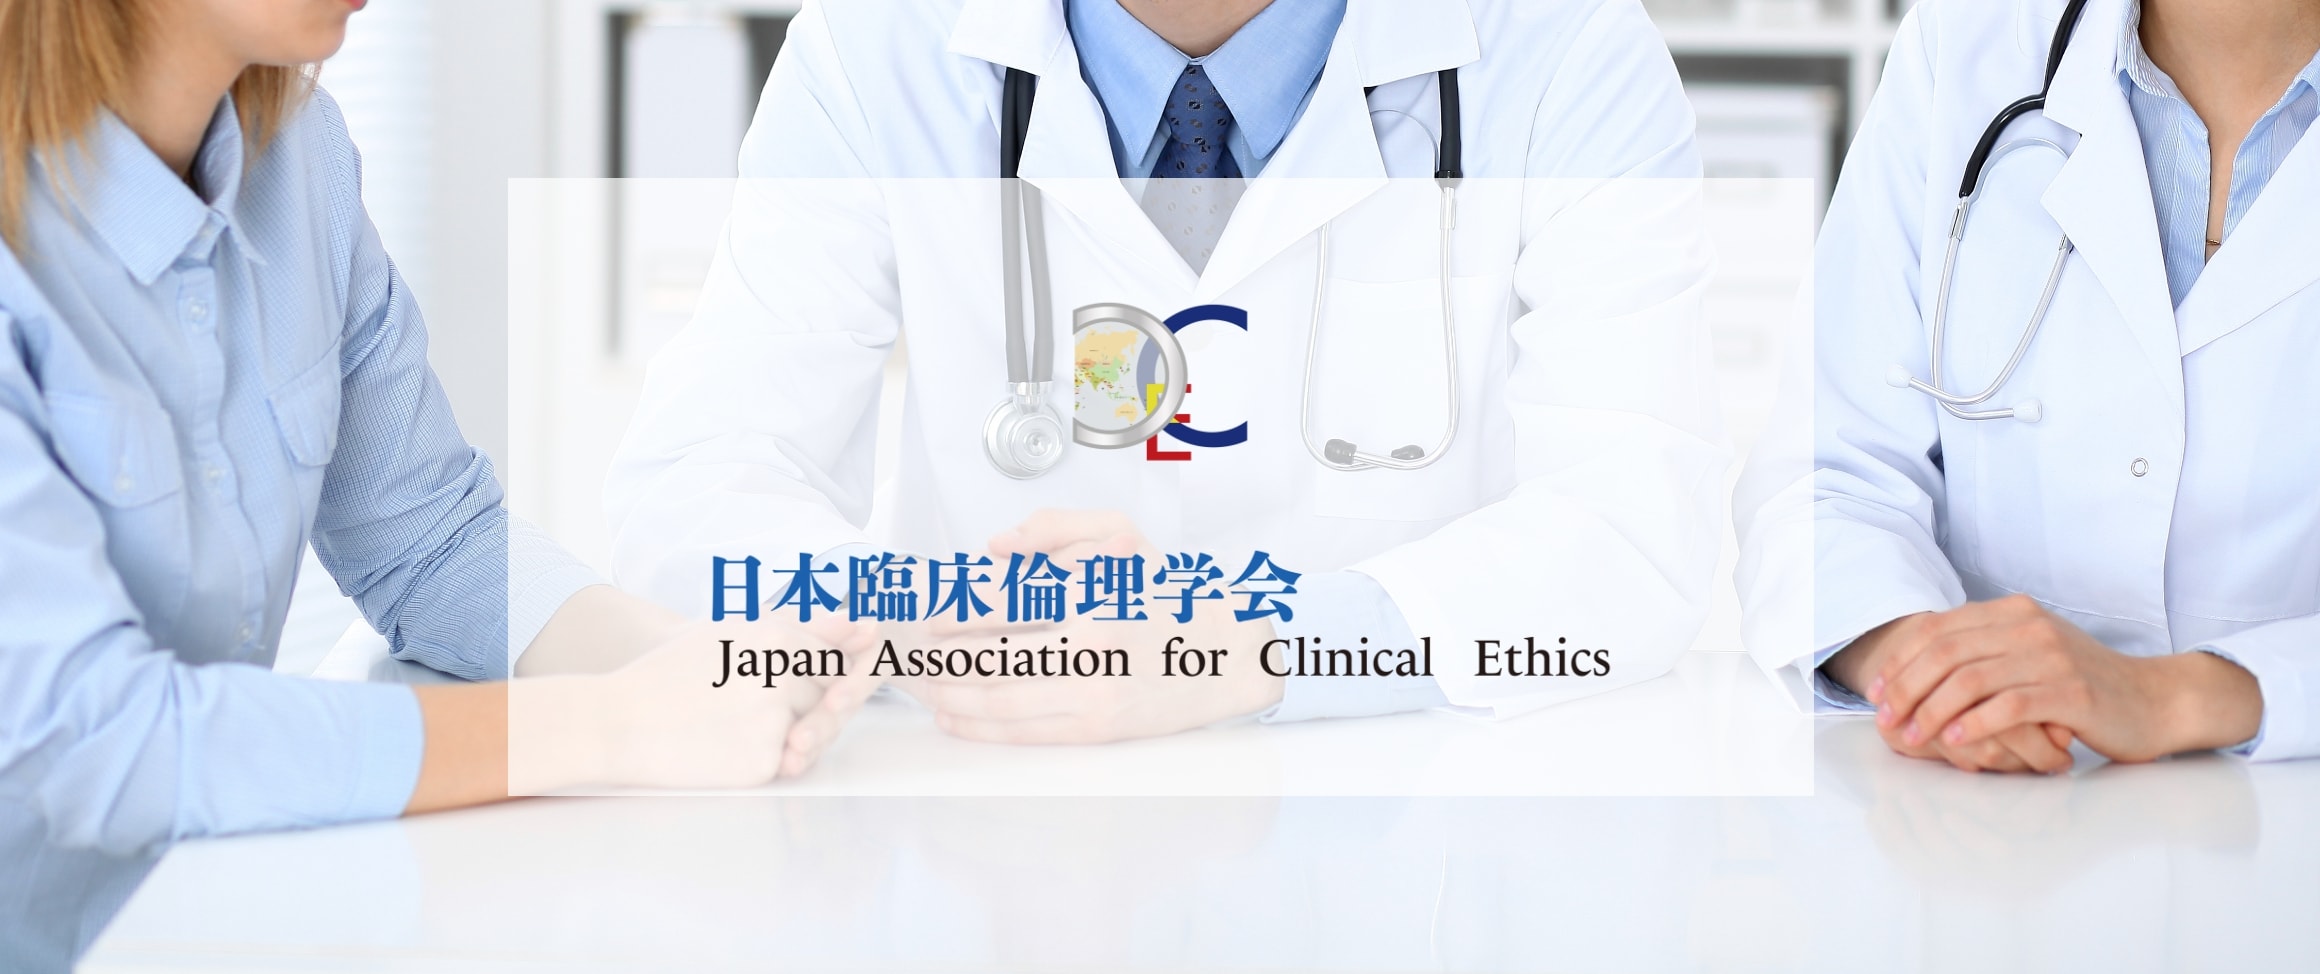 日本臨床倫理学会 japan association for clinical ethics